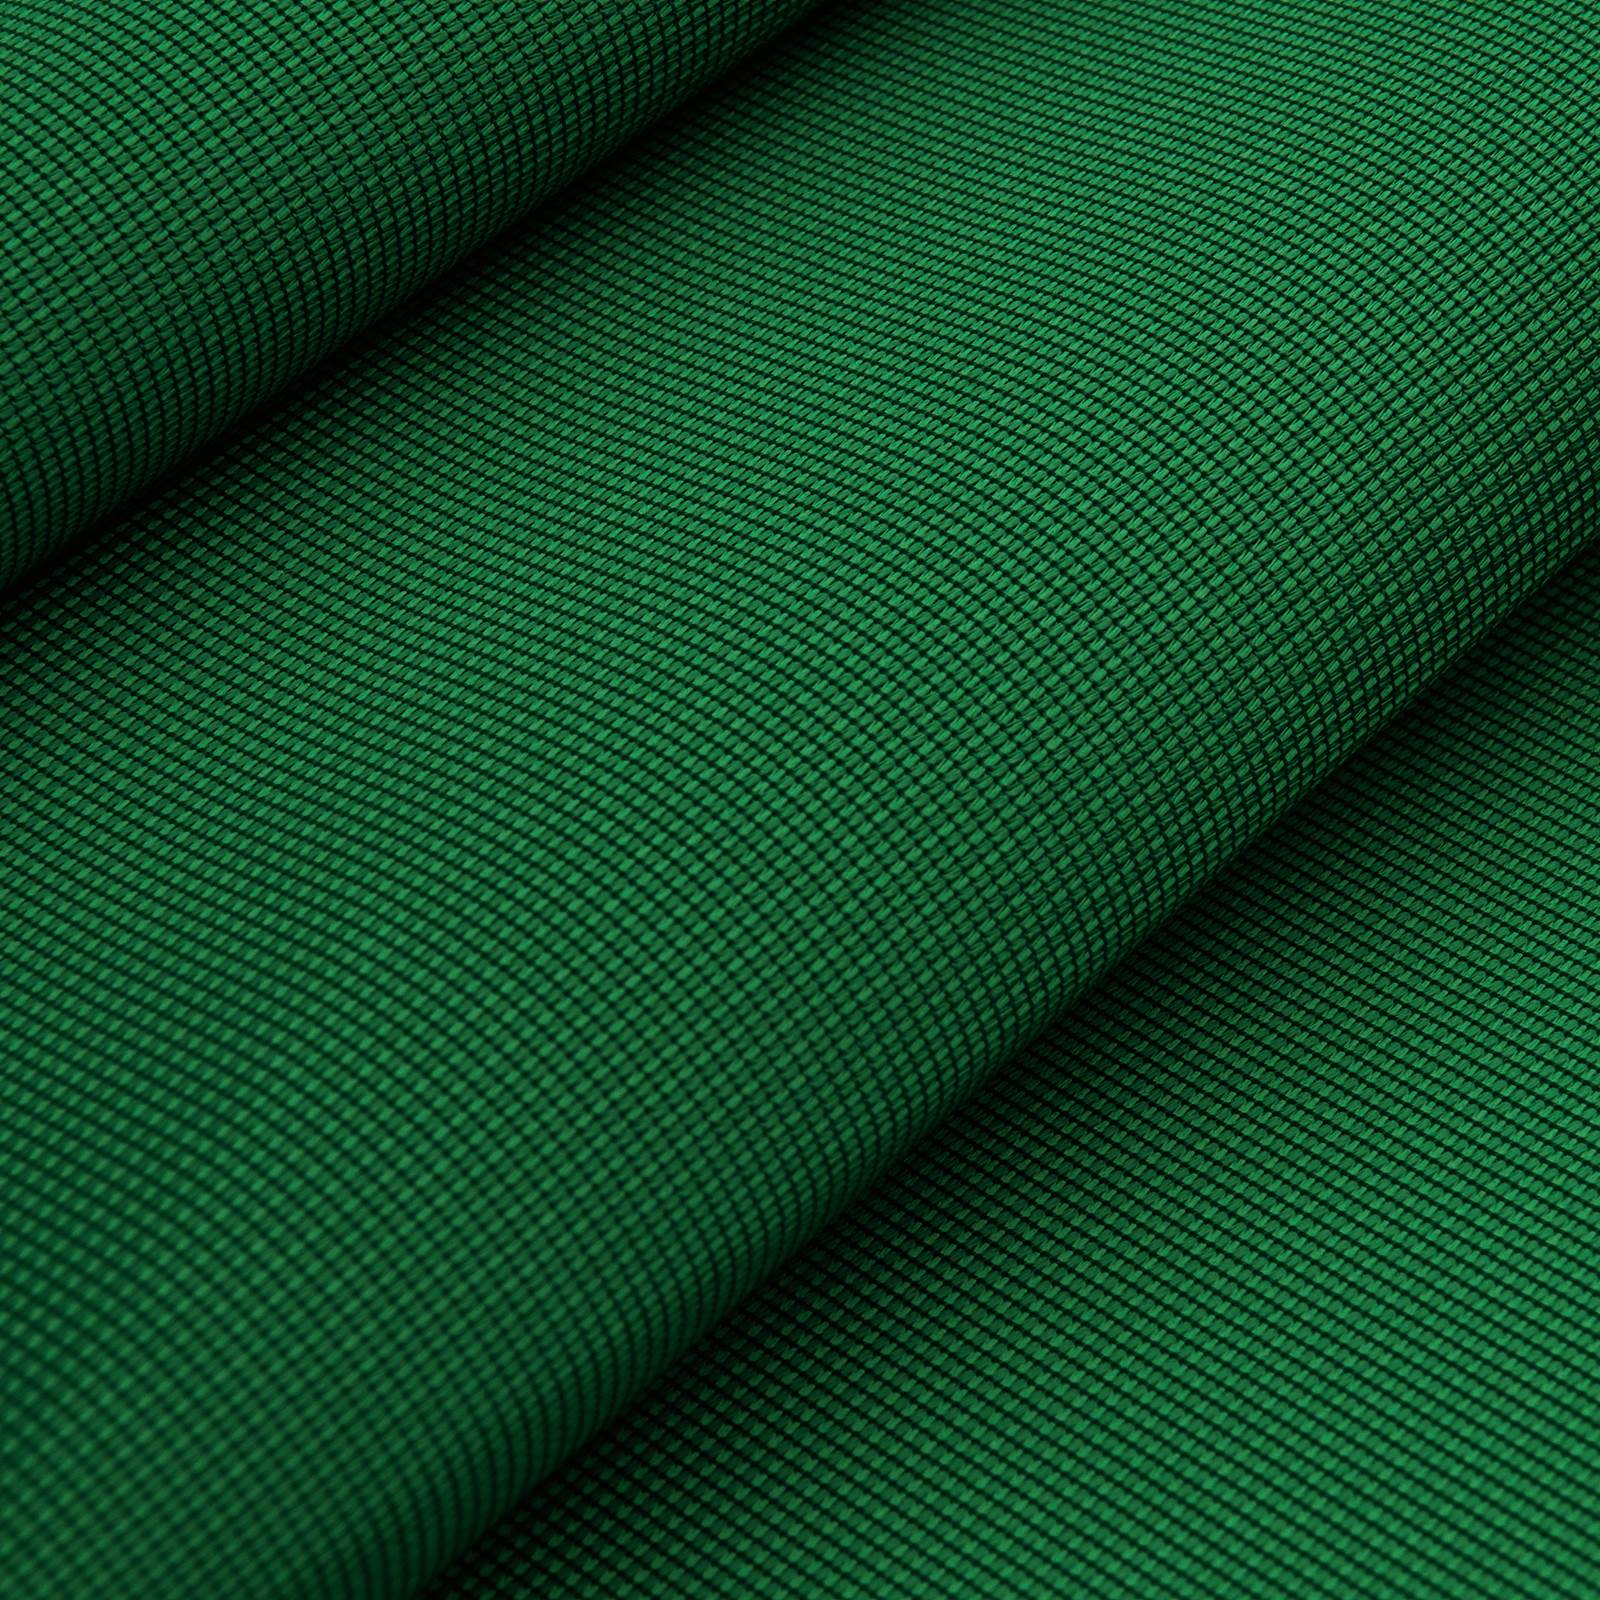 Ava Vlagstof Polyester Breisel (groen)